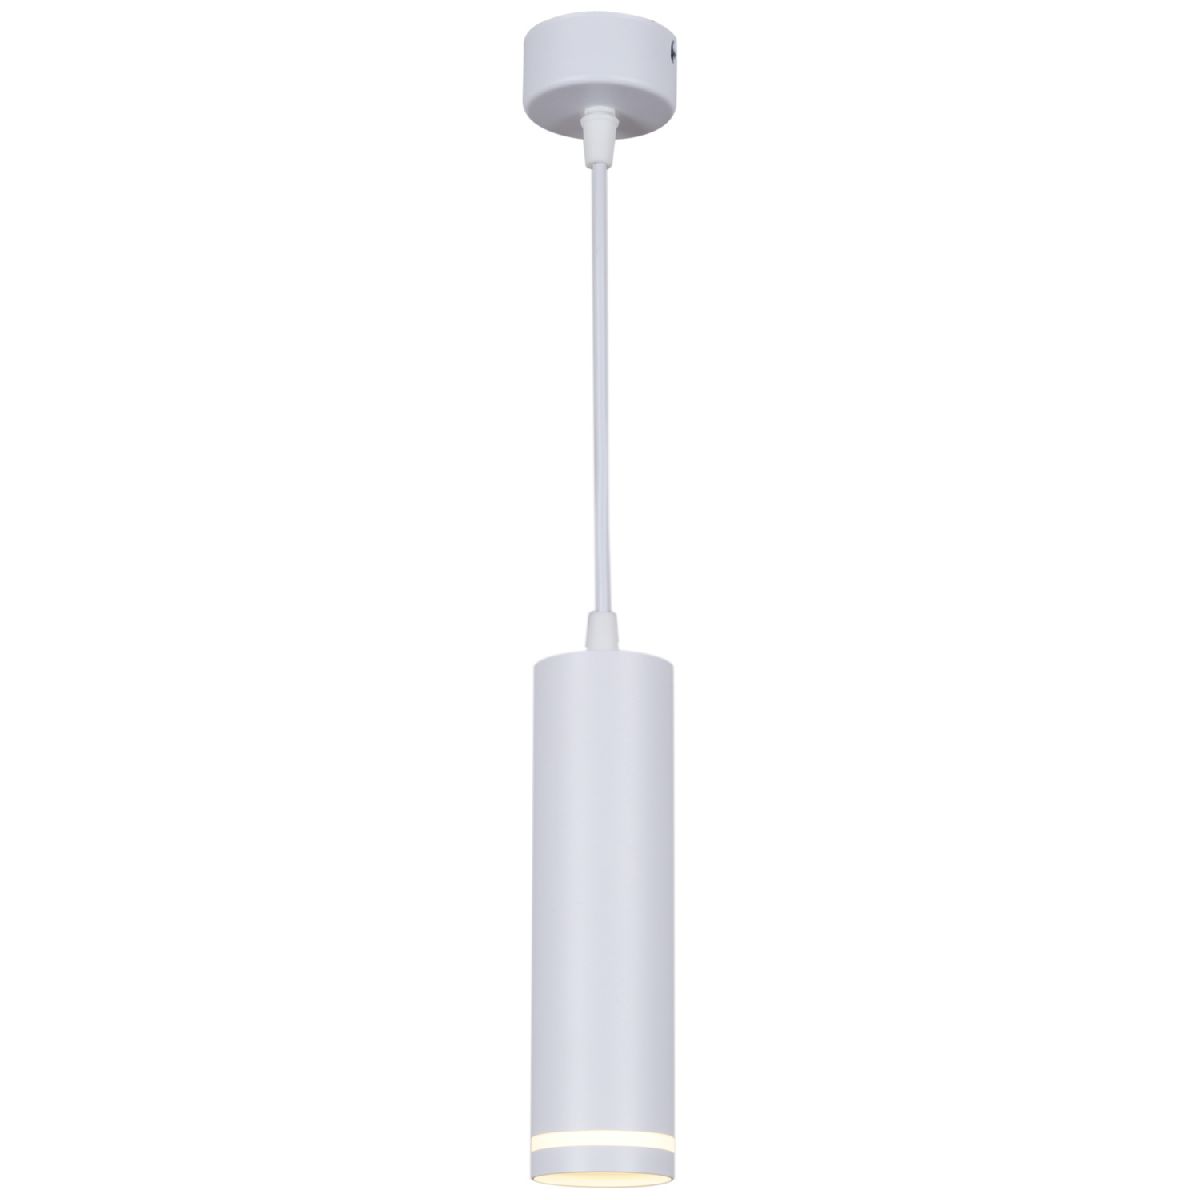 Подвесной светильник Reluce 16001-0.9-001LD 200mm GU10 WT